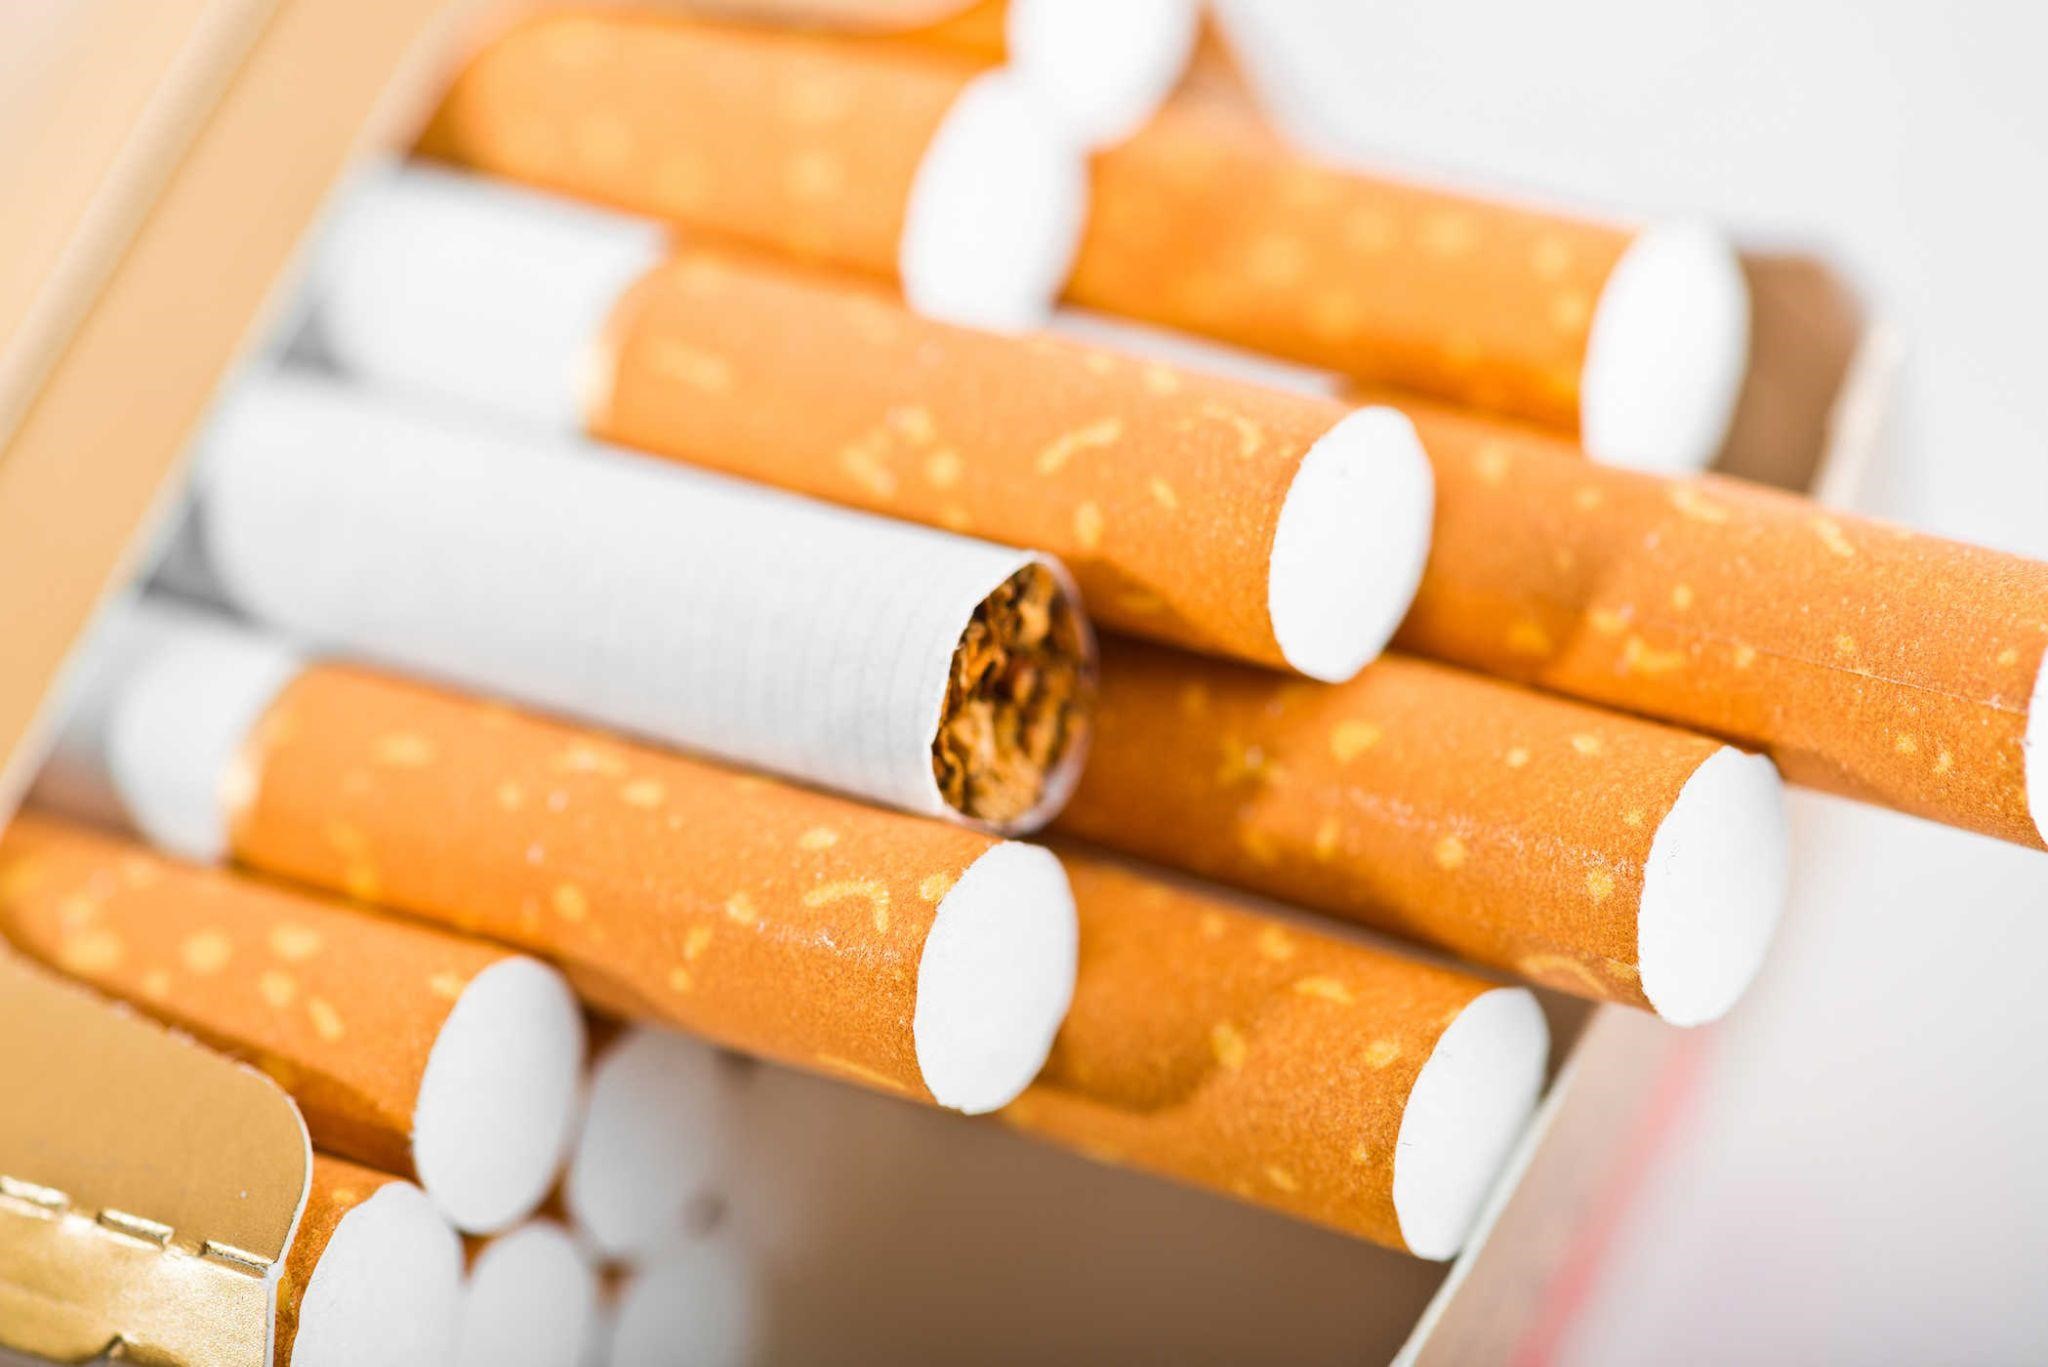 Thuế tiêu thụ đặc biệt đối với thuốc lá dự kiến áp dụng mức thuế tuyệt đối